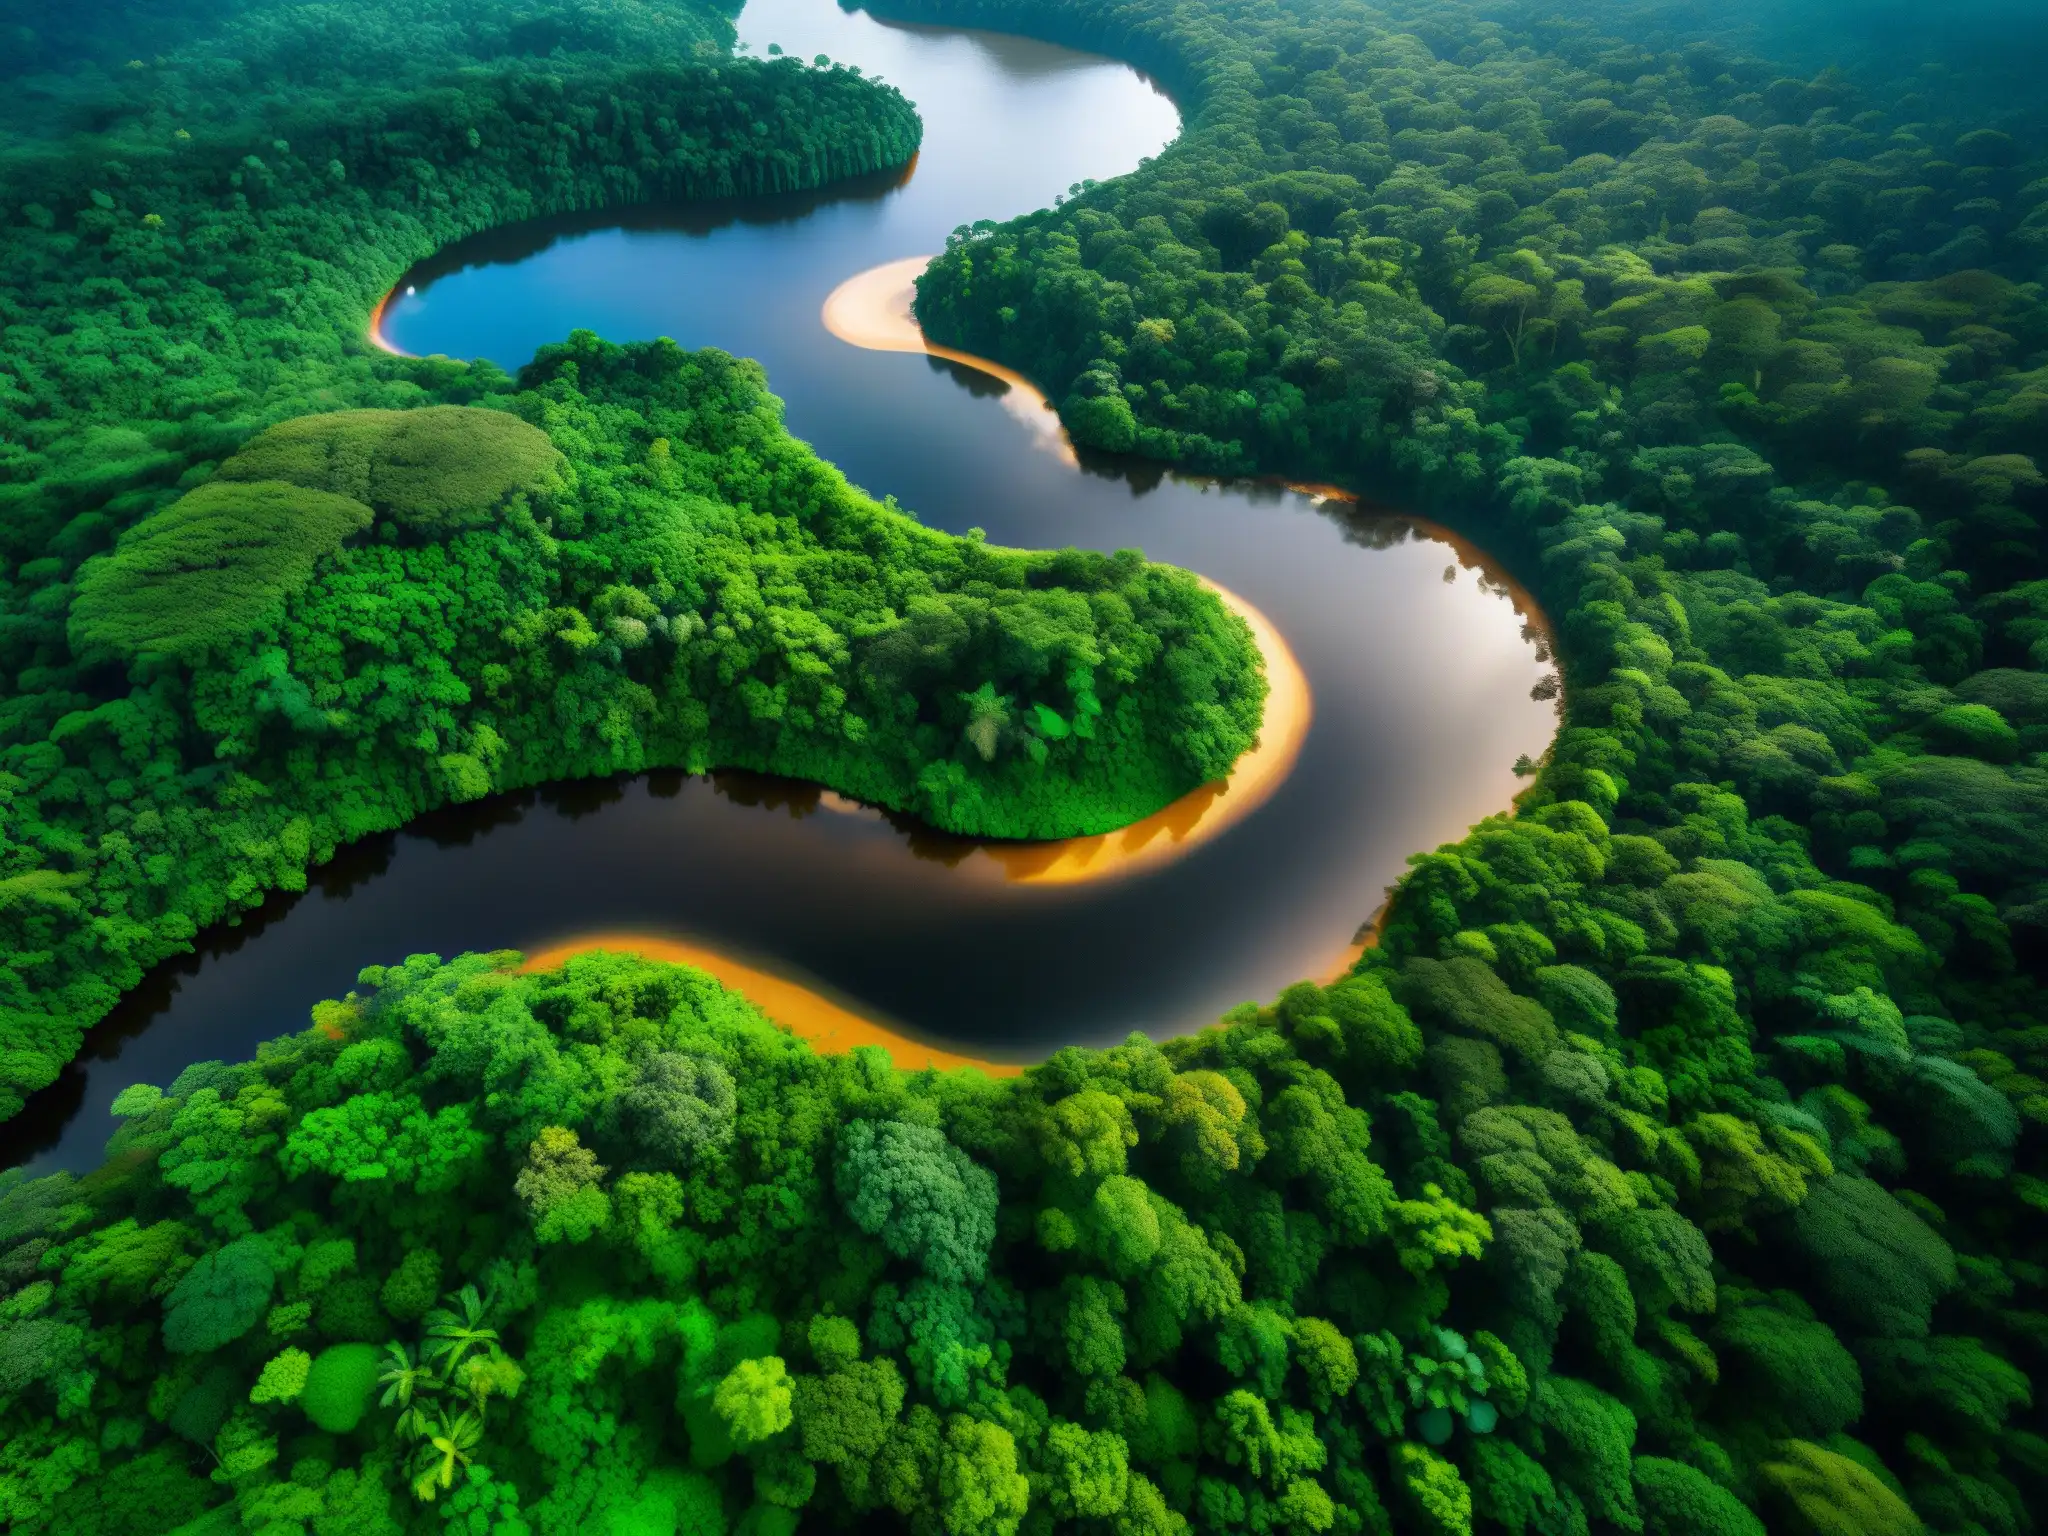 Imagen impactante del denso Amazonas con un río serpenteante, filtrándose la luz entre el dosel y creando sombras dramáticas en el suelo del bosque